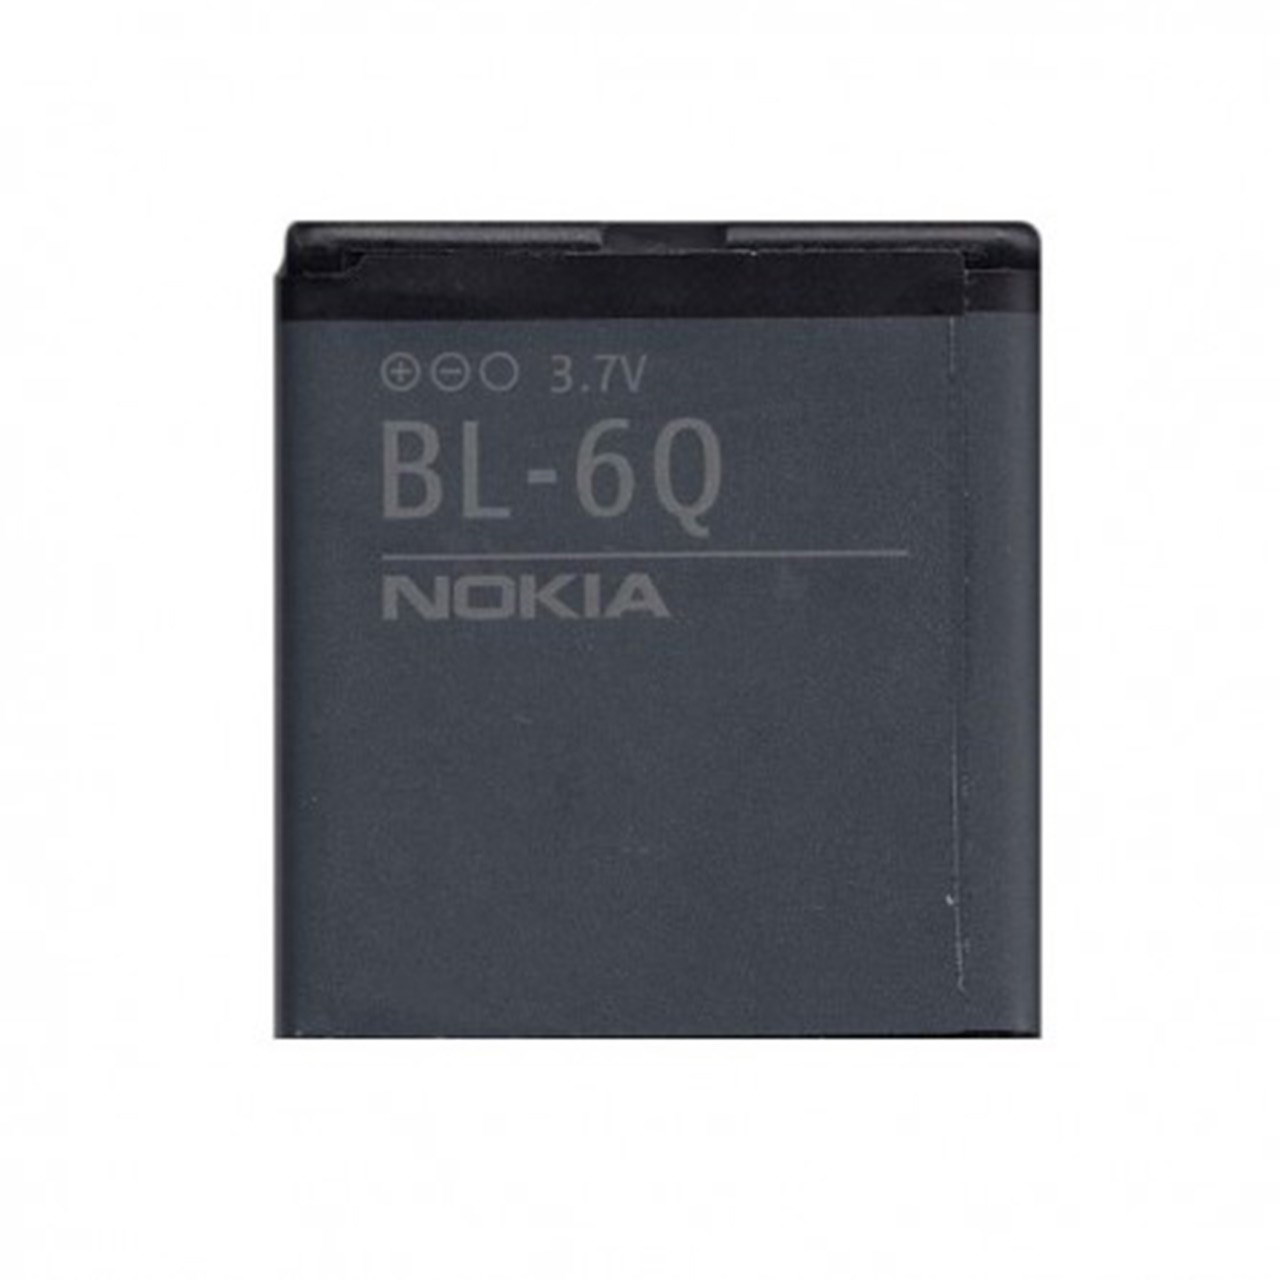 باتری موبایل مدل BL-6Q با ظرفیت 970Mah مناسب برای گوشی موبایل نوکیا 6700 Classic